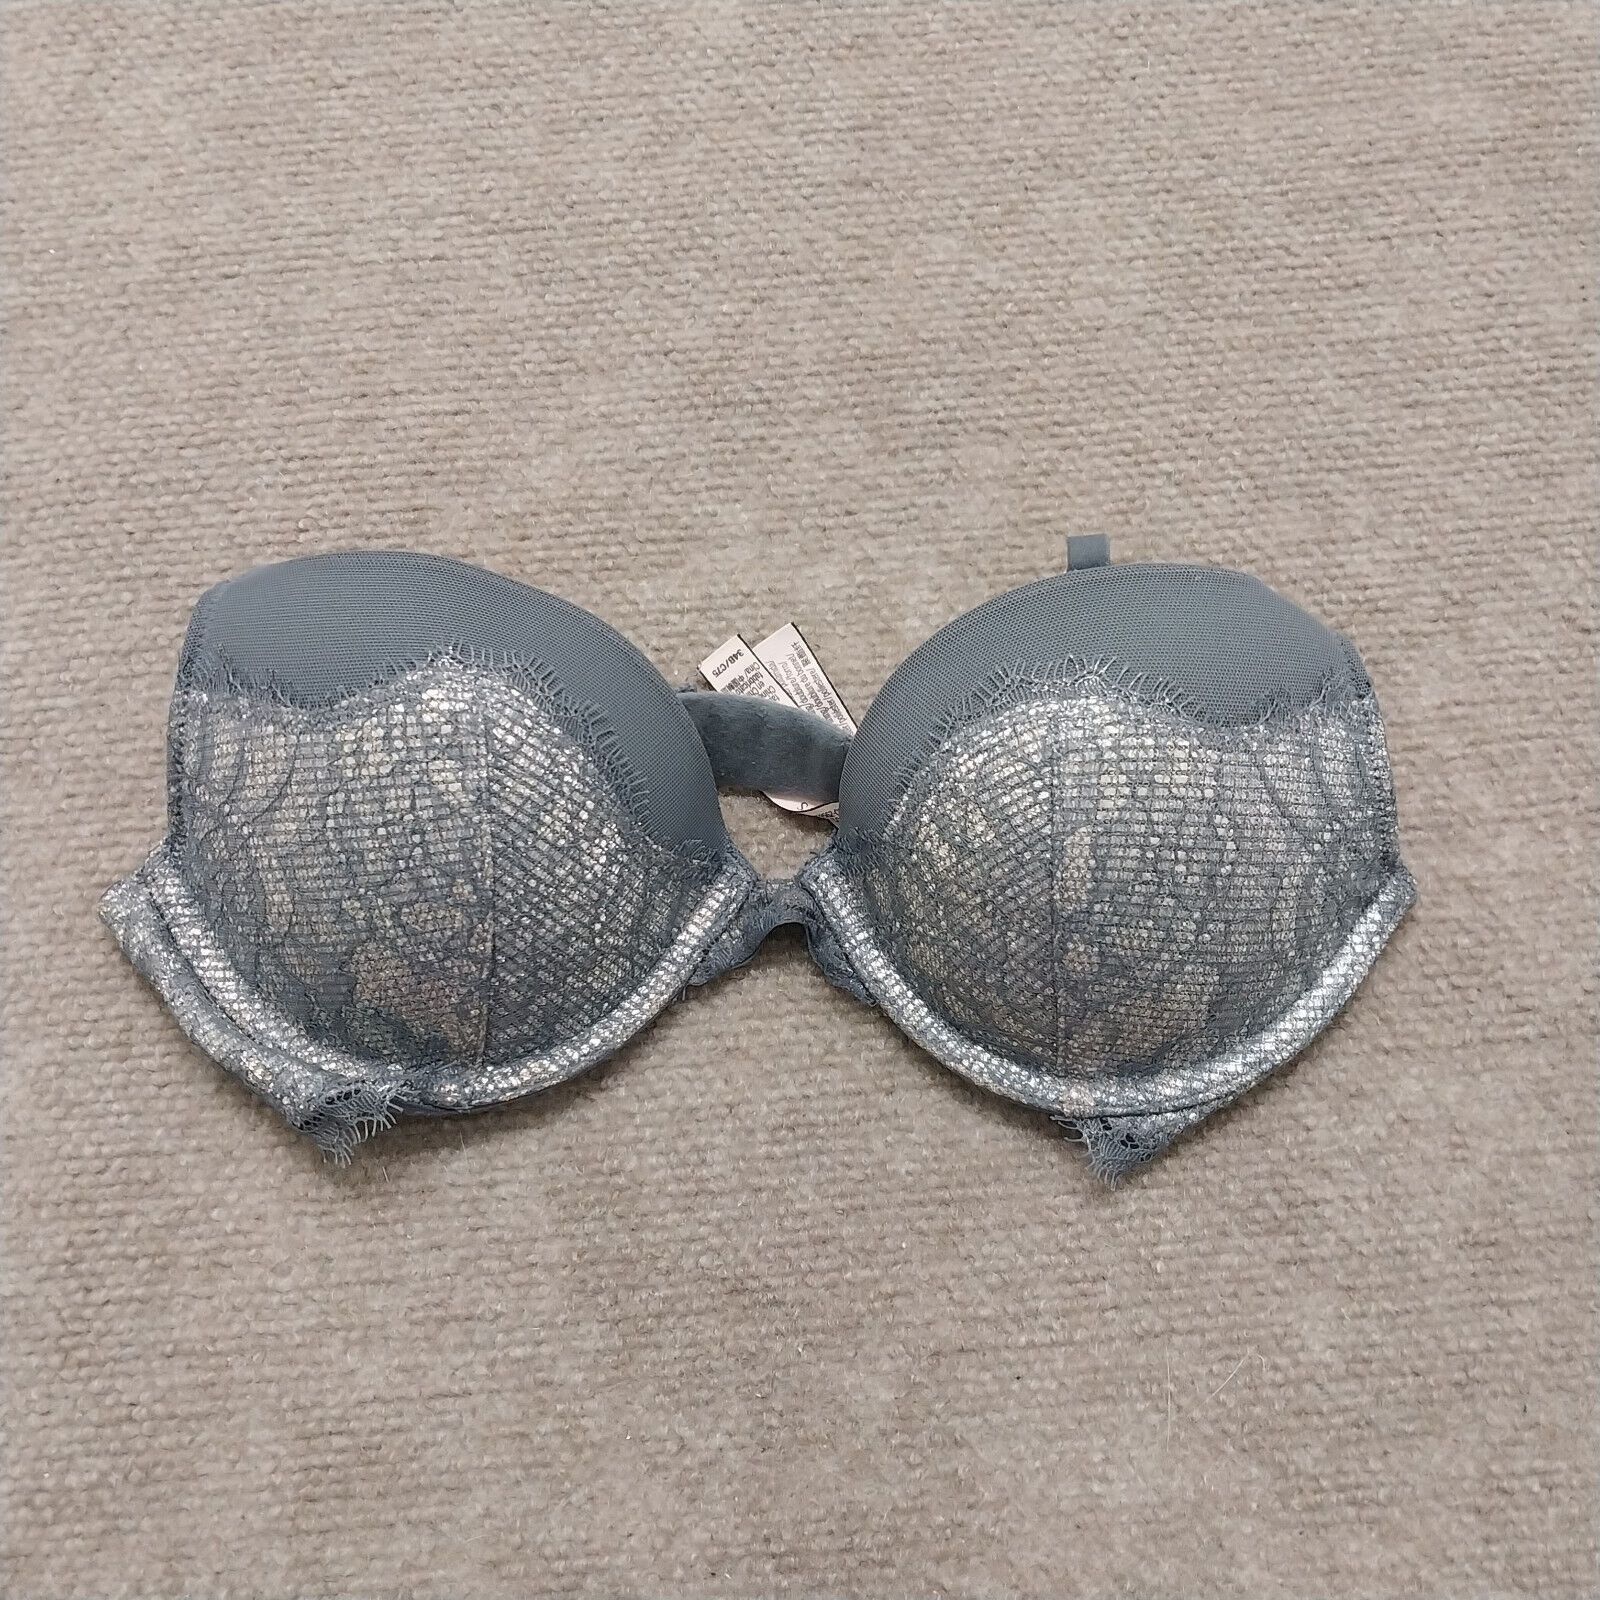 ladies victoria's secret bra size 34B/C75